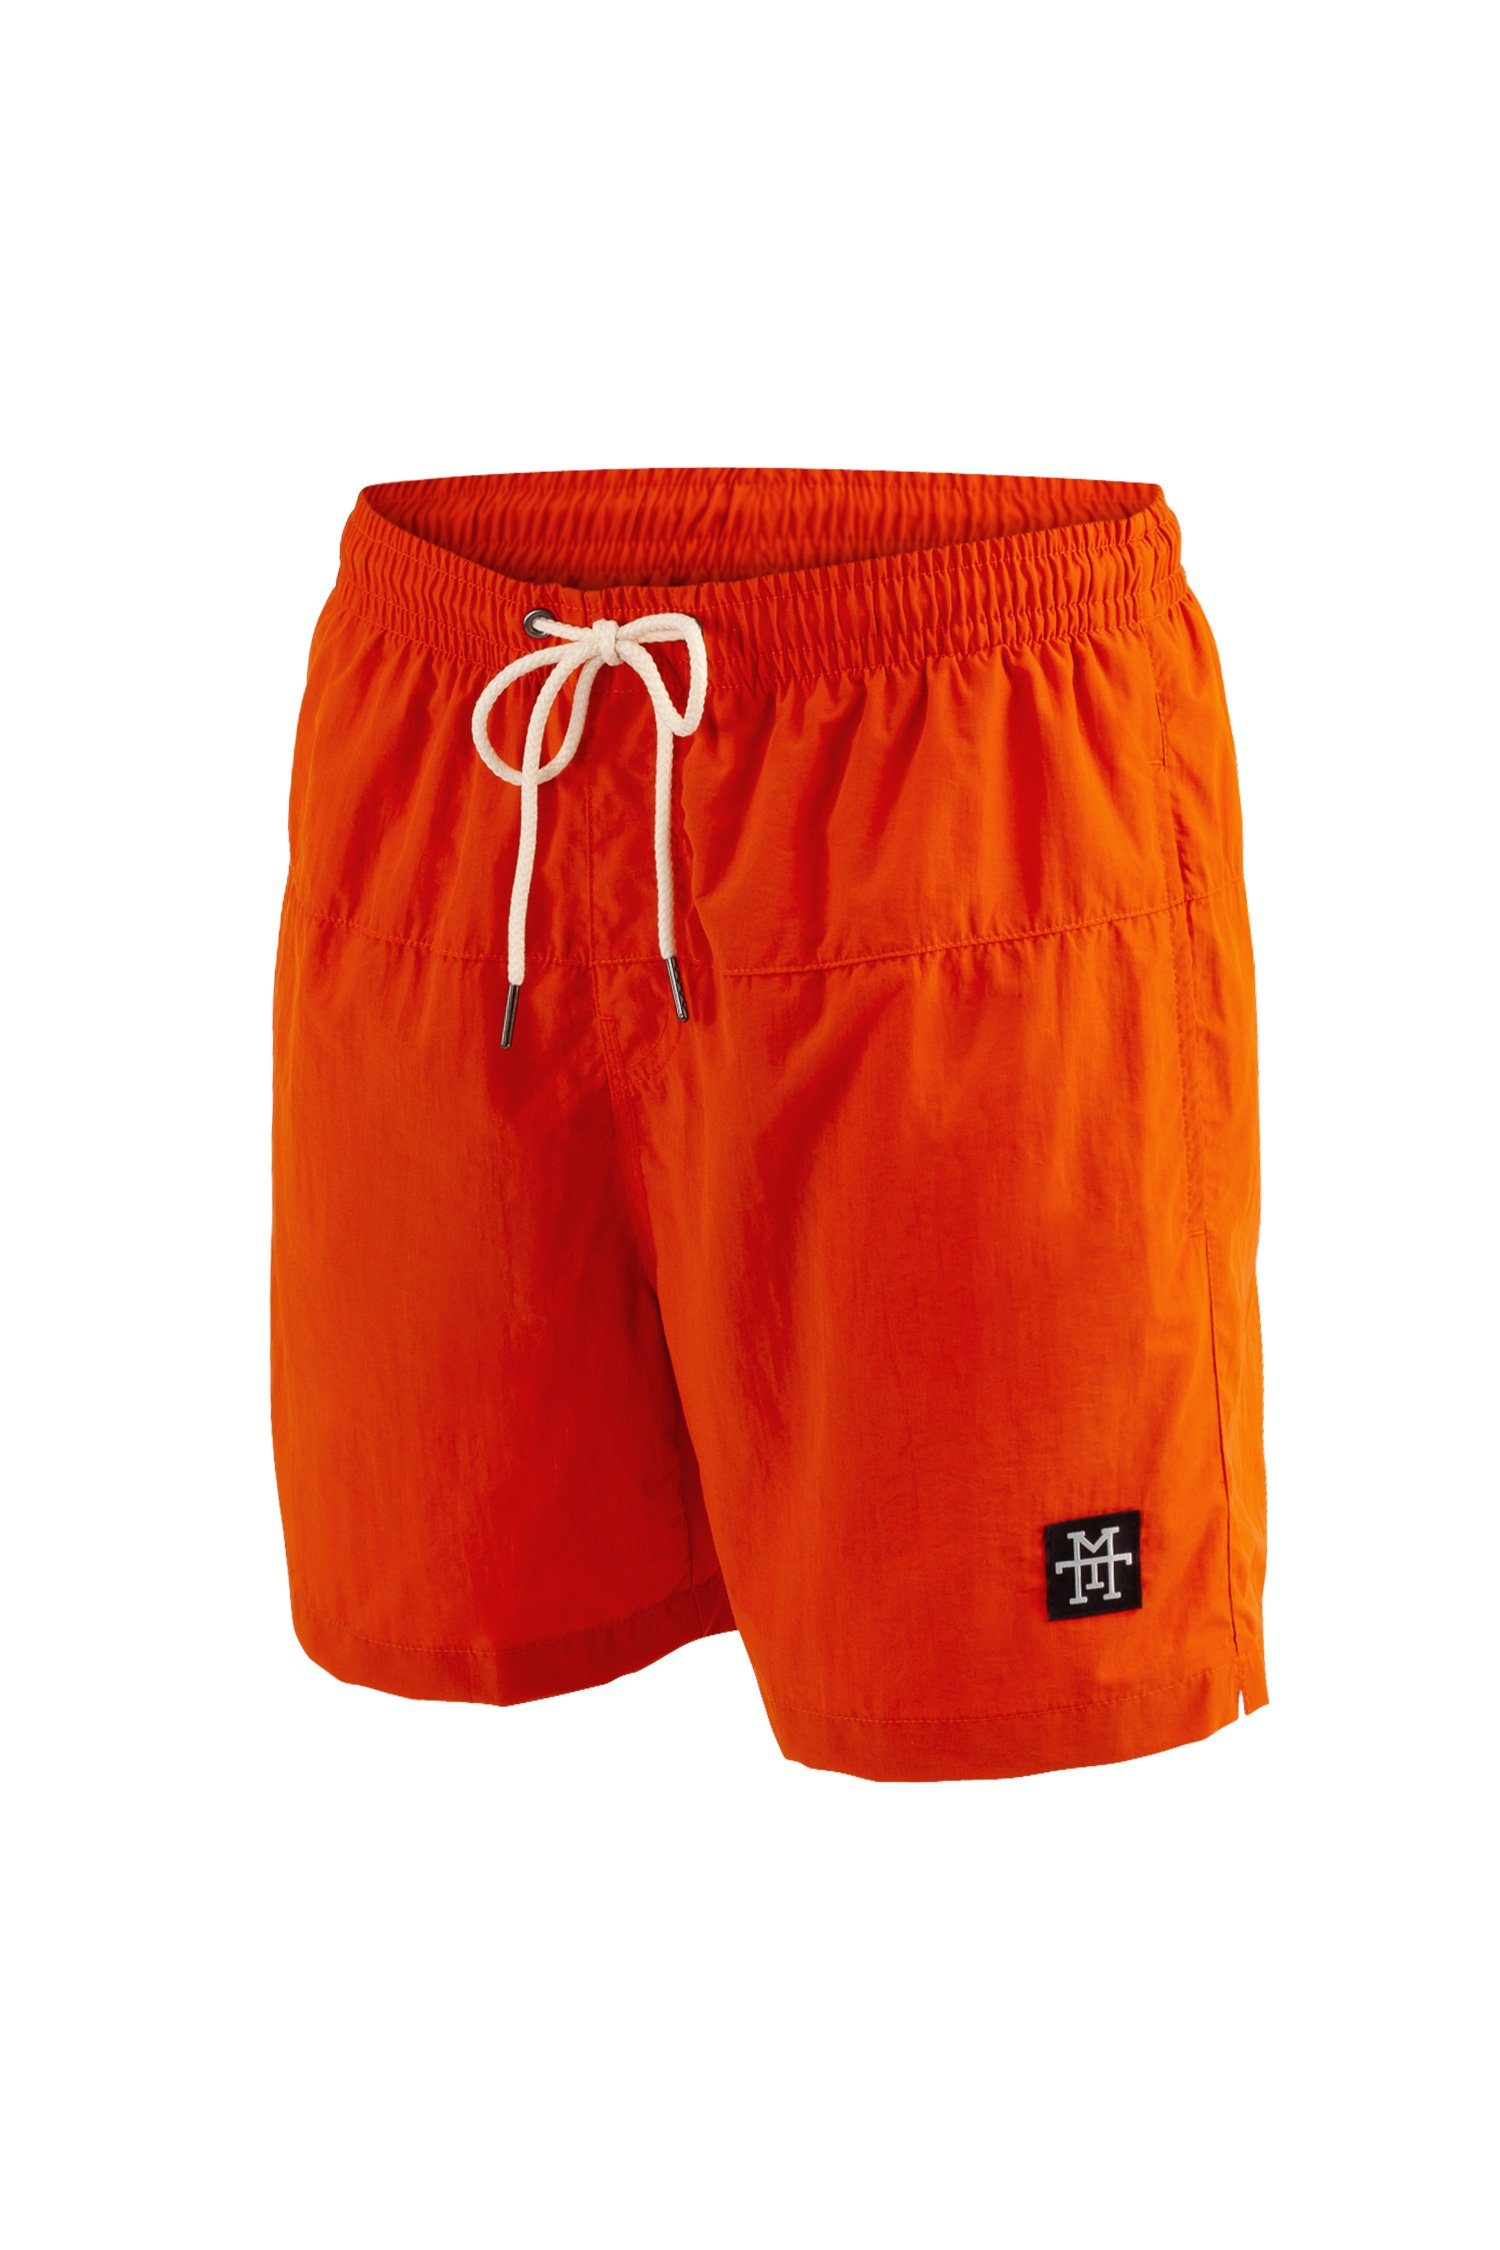 Manufaktur13 Badeshorts - Swim schnelltrocknend Tangerine Badehosen Shorts